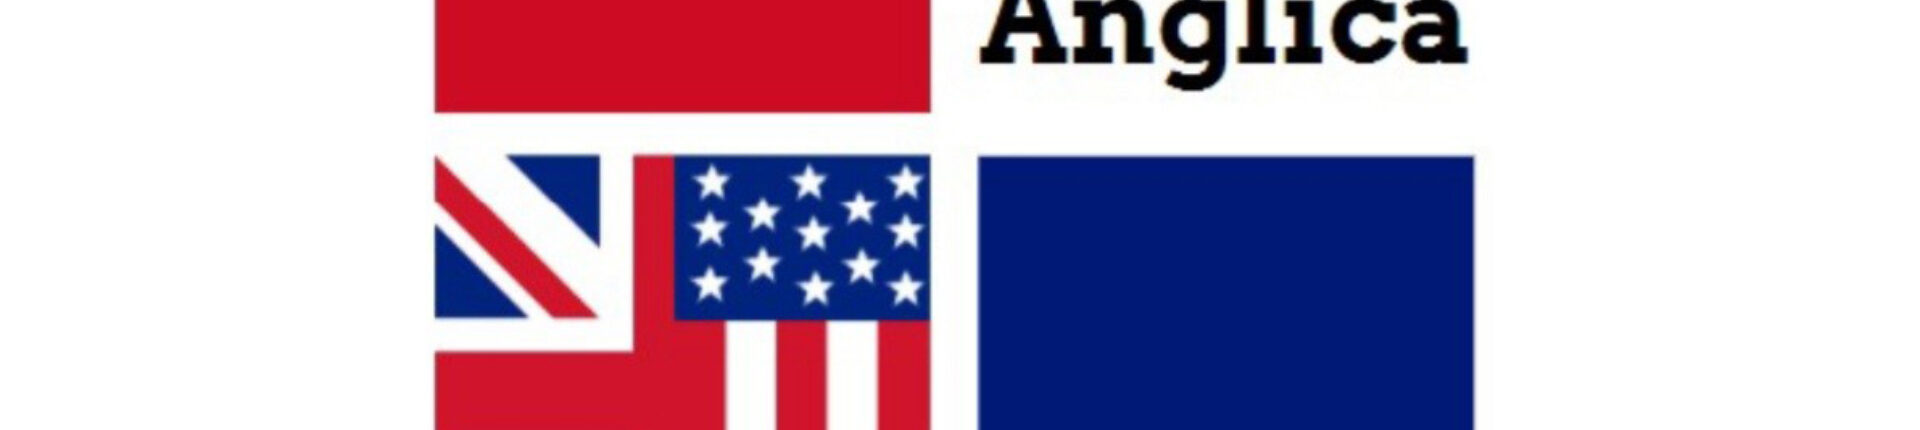 Lingua Anglica : cours d’anglais à la Maison des Associations